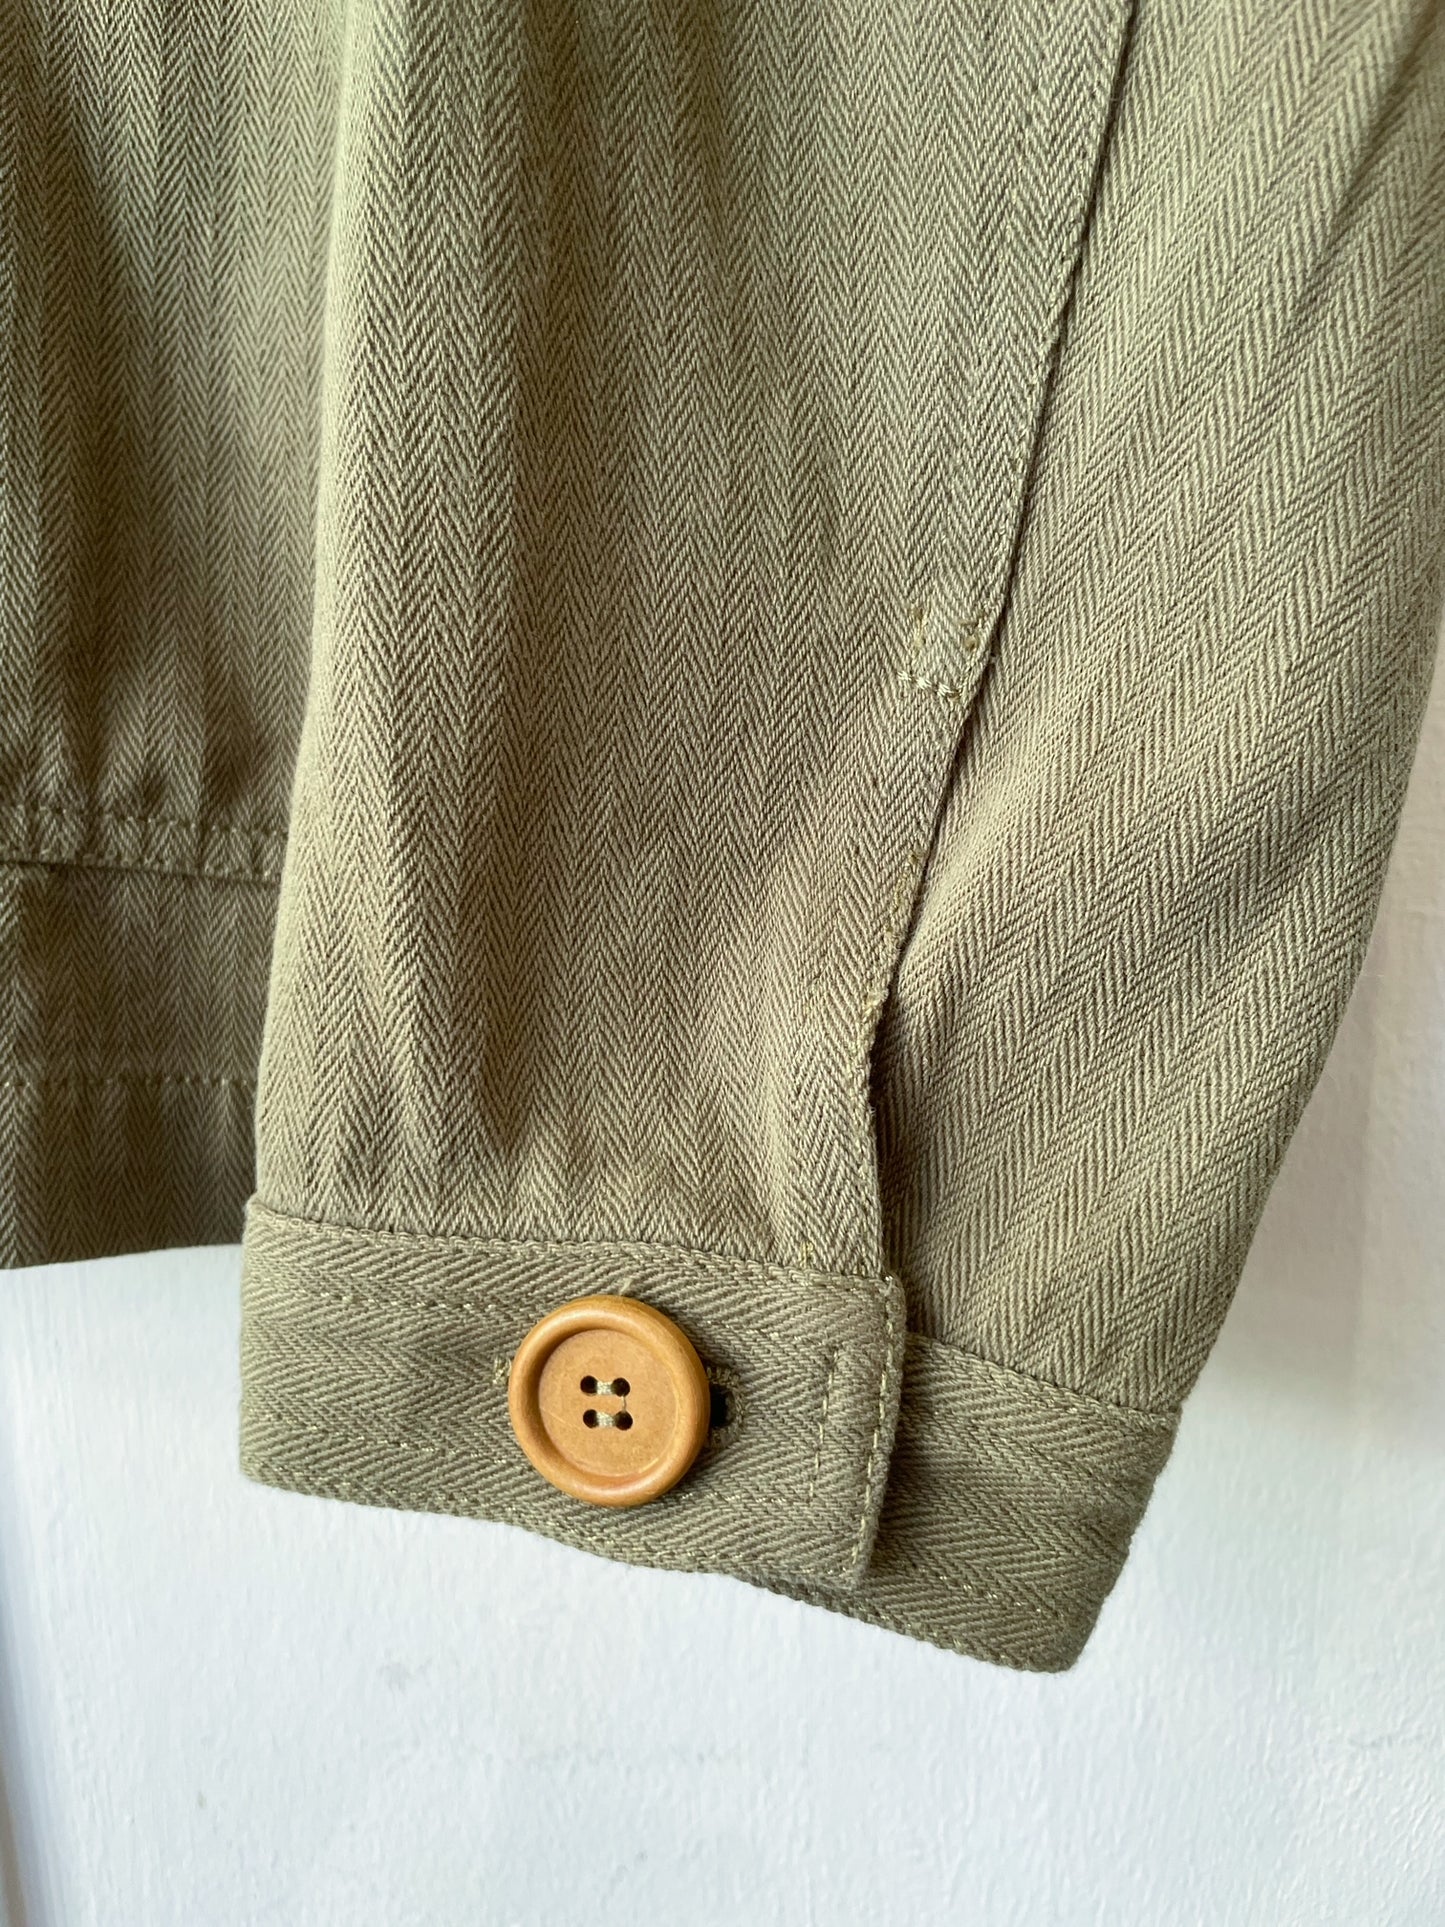 60s Style Herringbone Chore Jacket Army Green